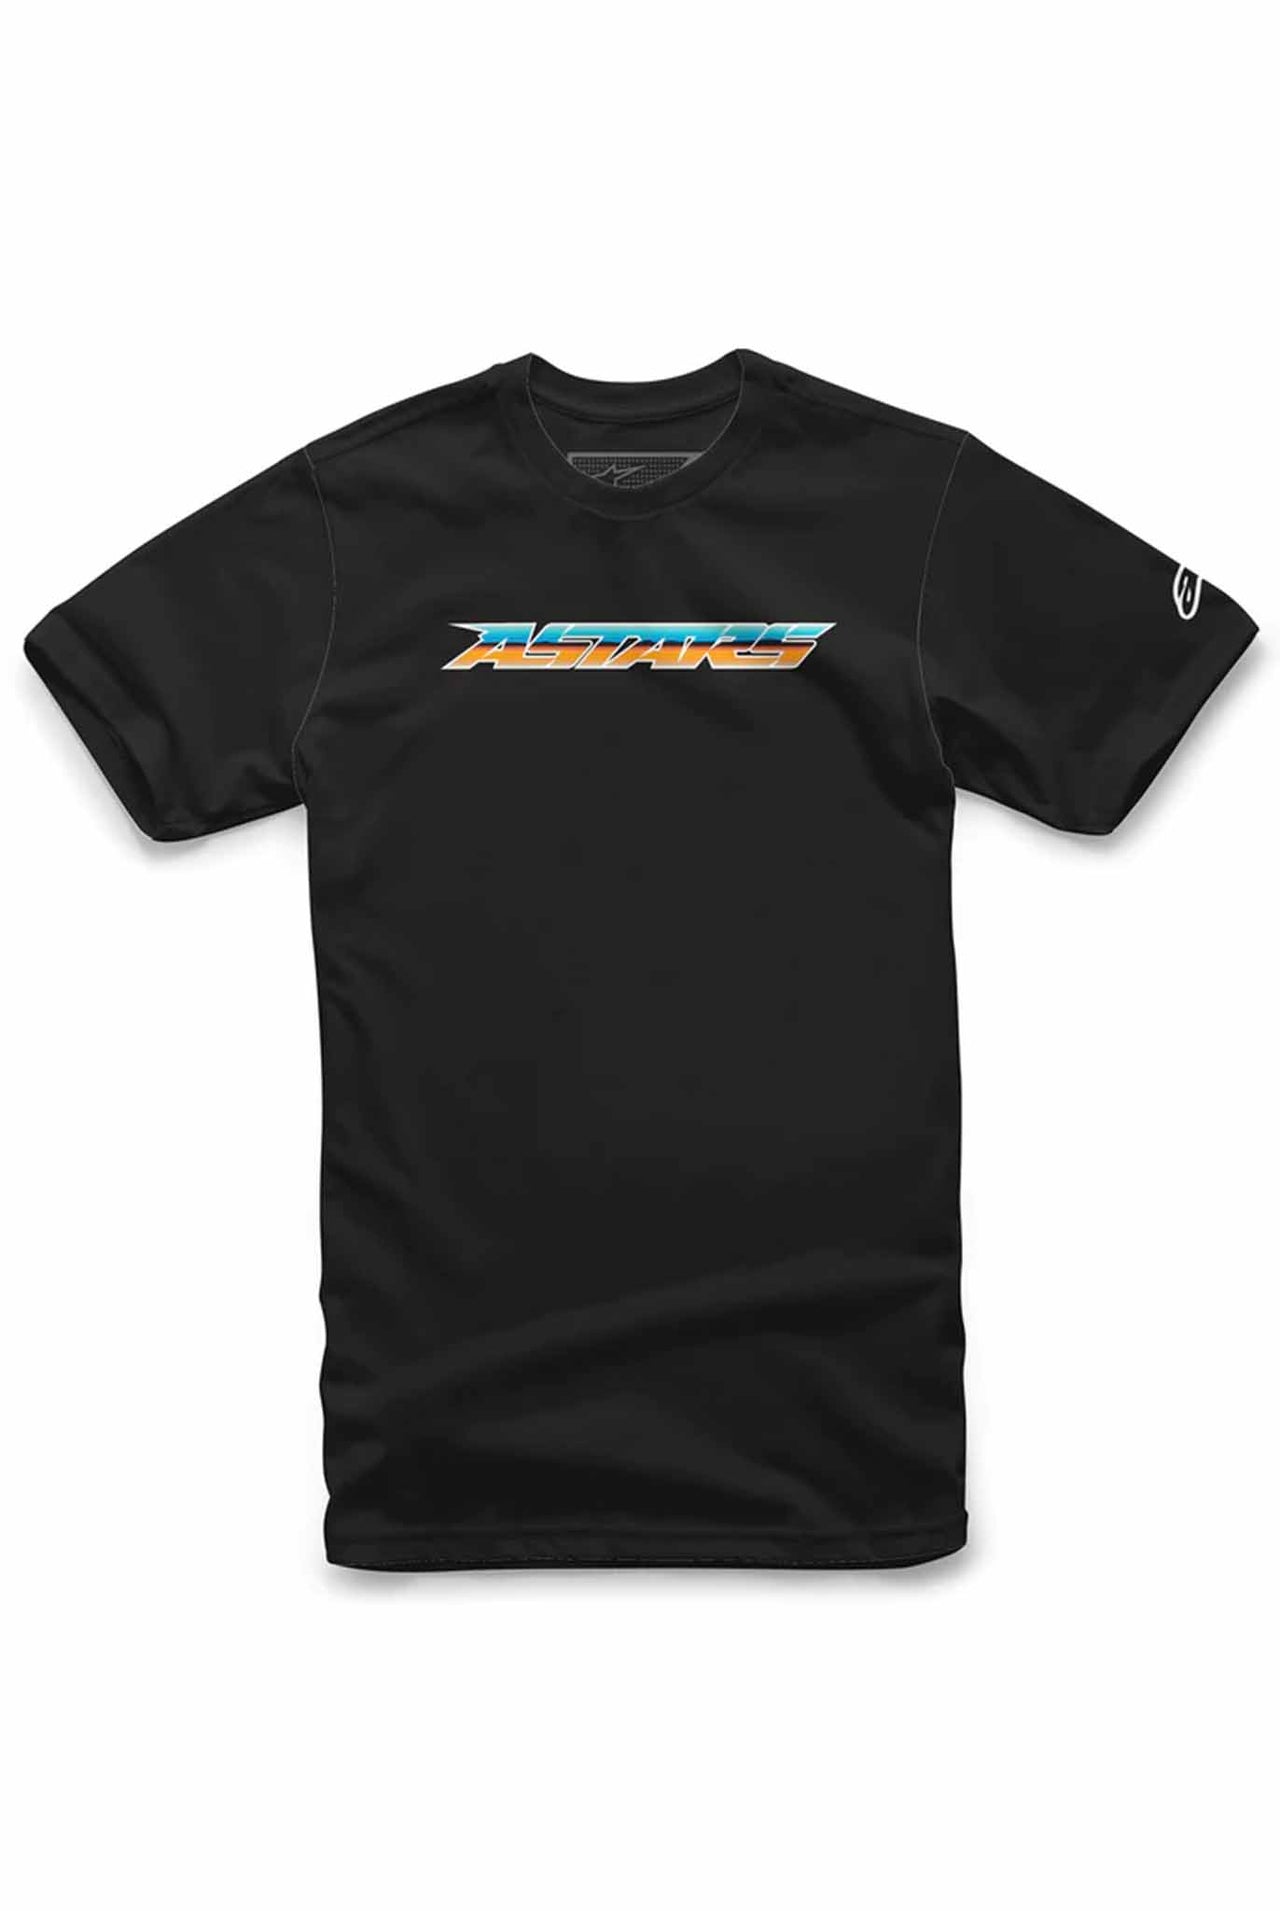 Camiseta Alpinestar Chromium Tee Black